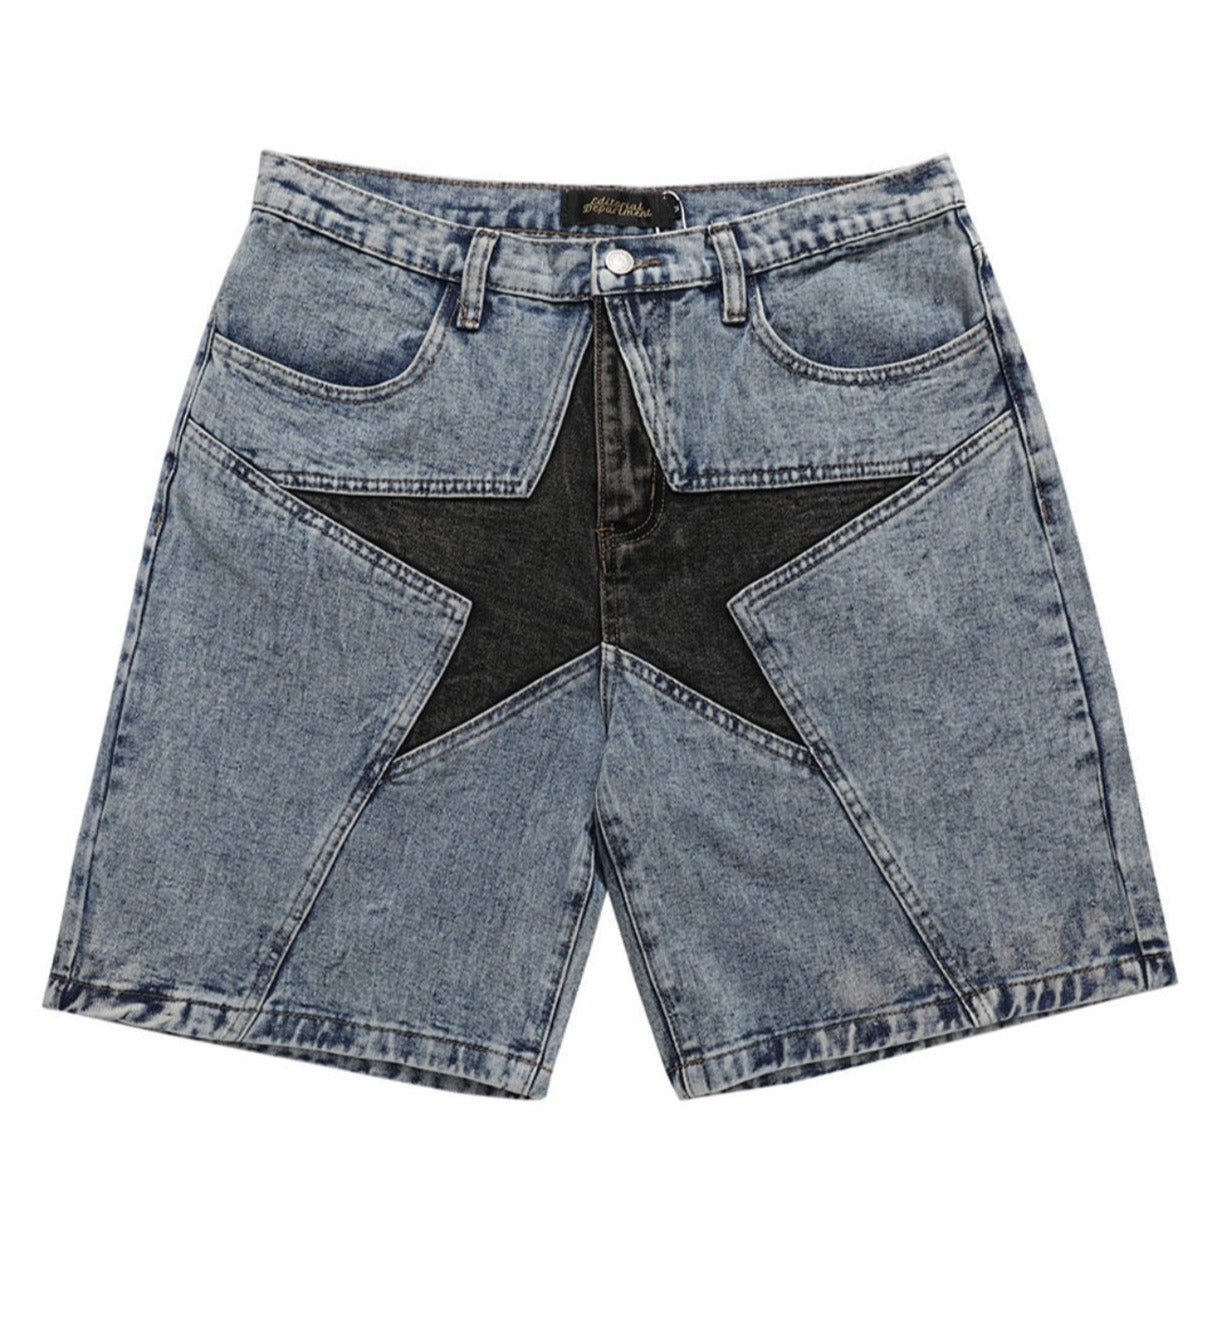 ★star shorts